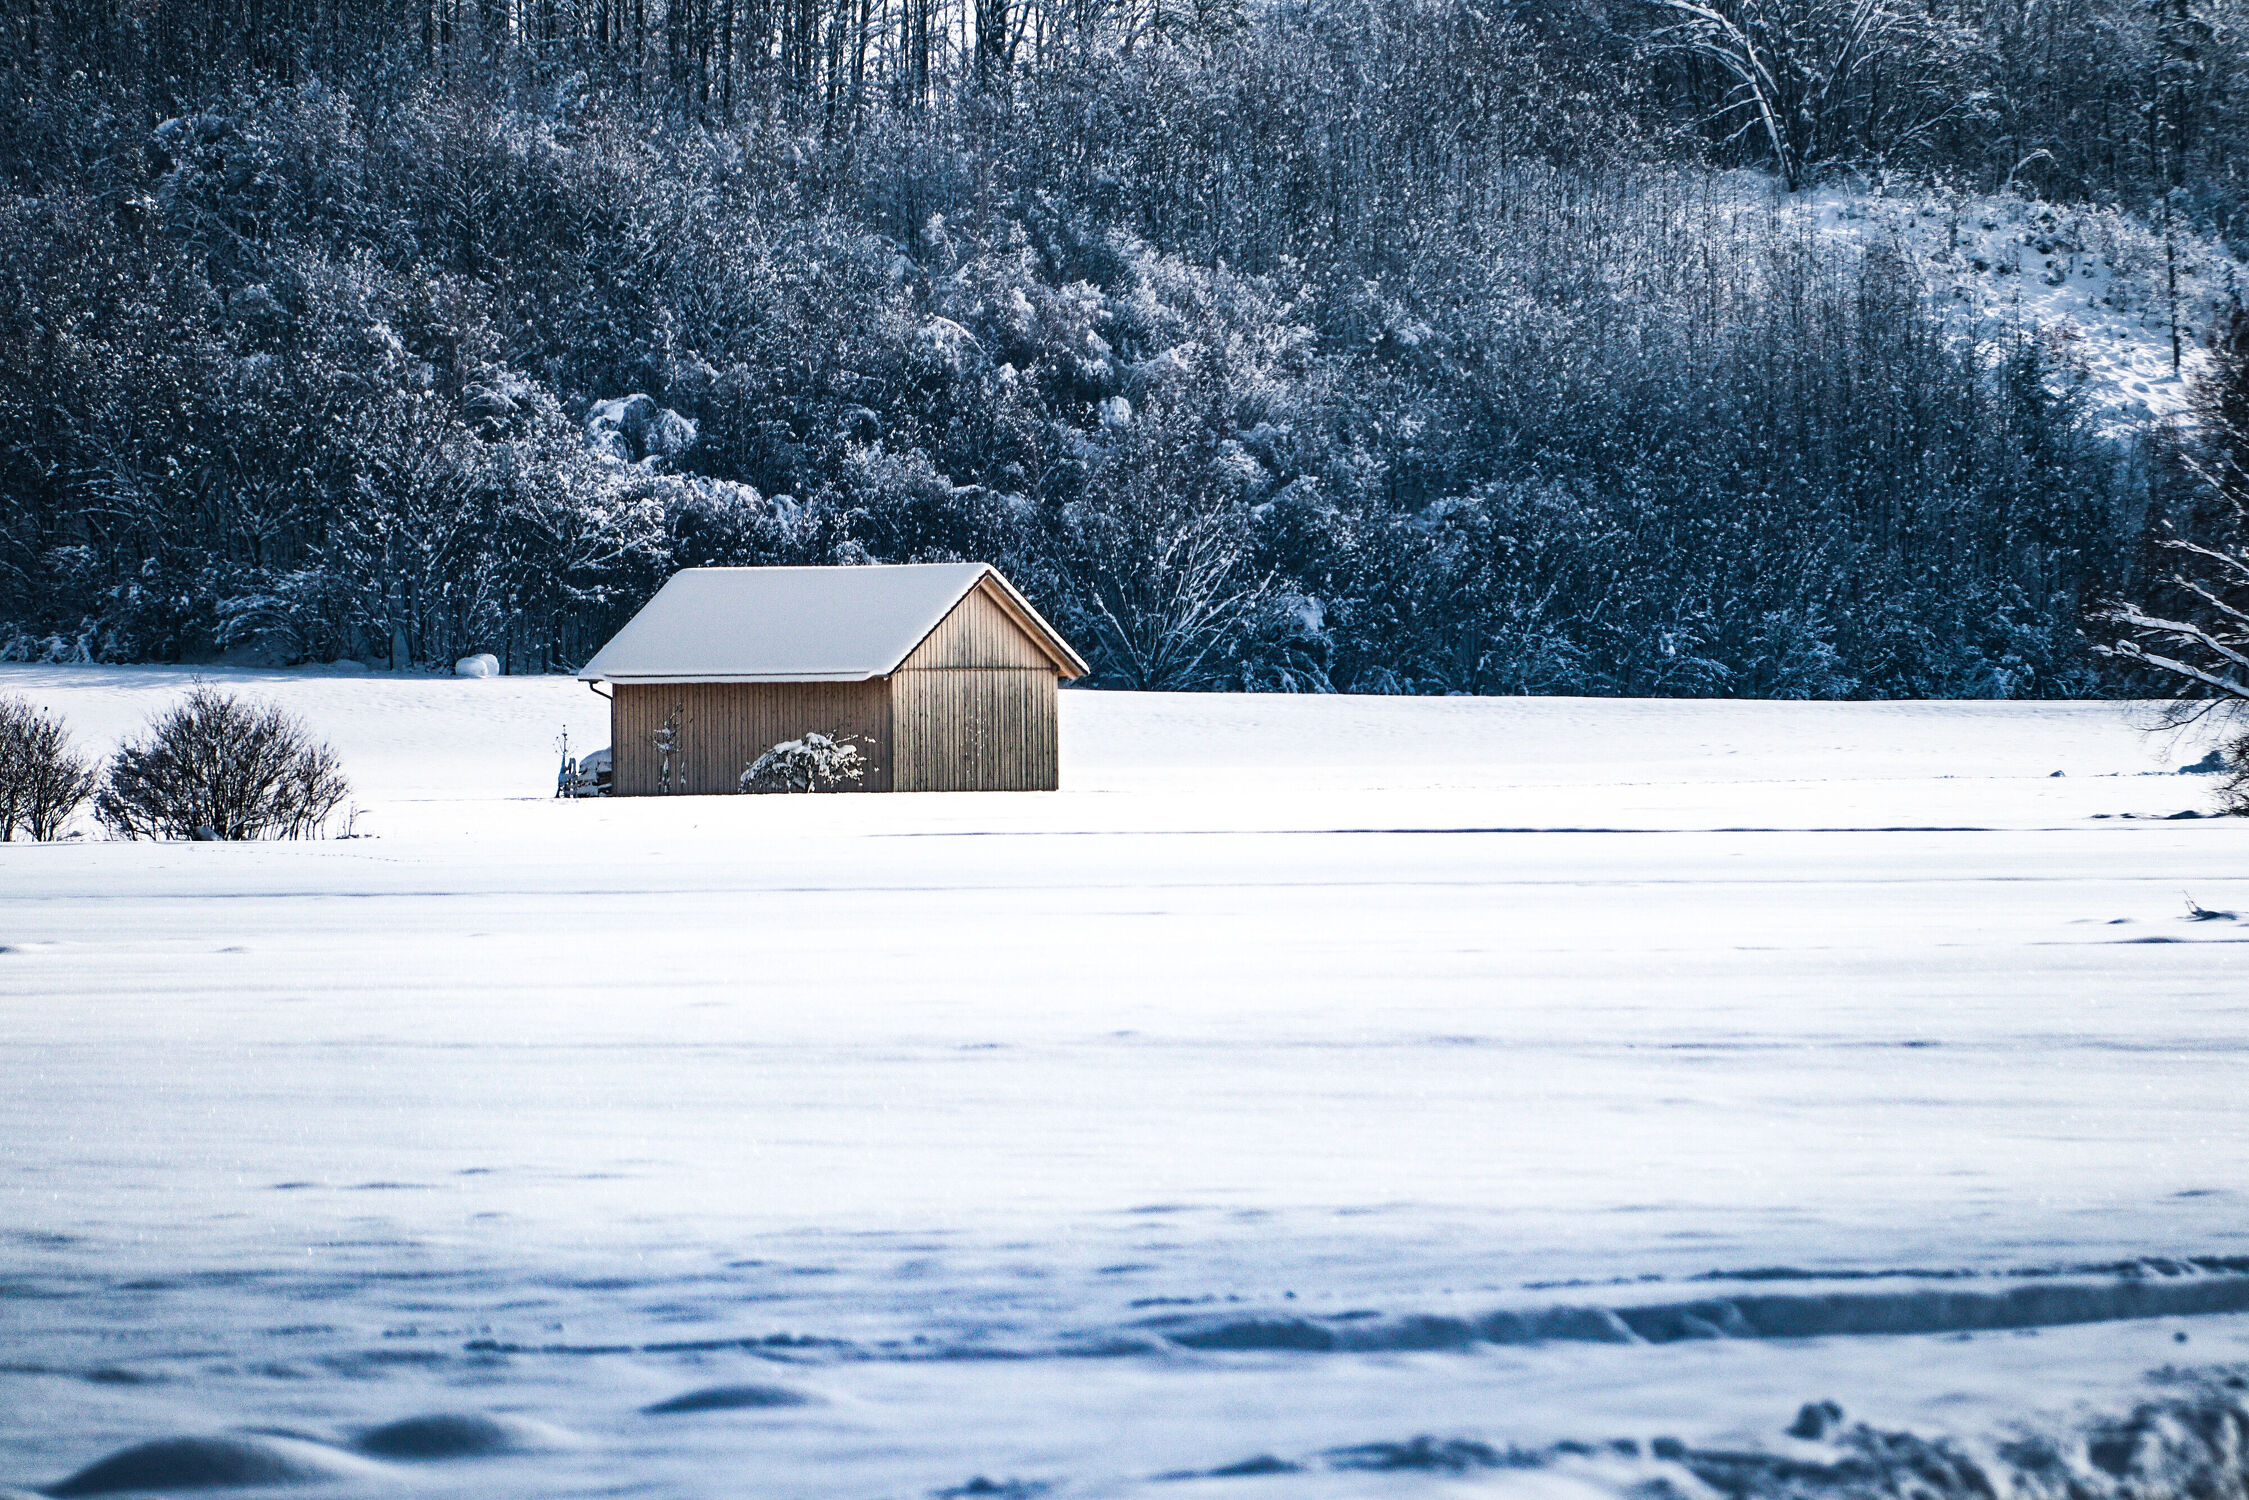 Bild mit Winter, Schnee, Wald, Haus, Landschaft, Hütte